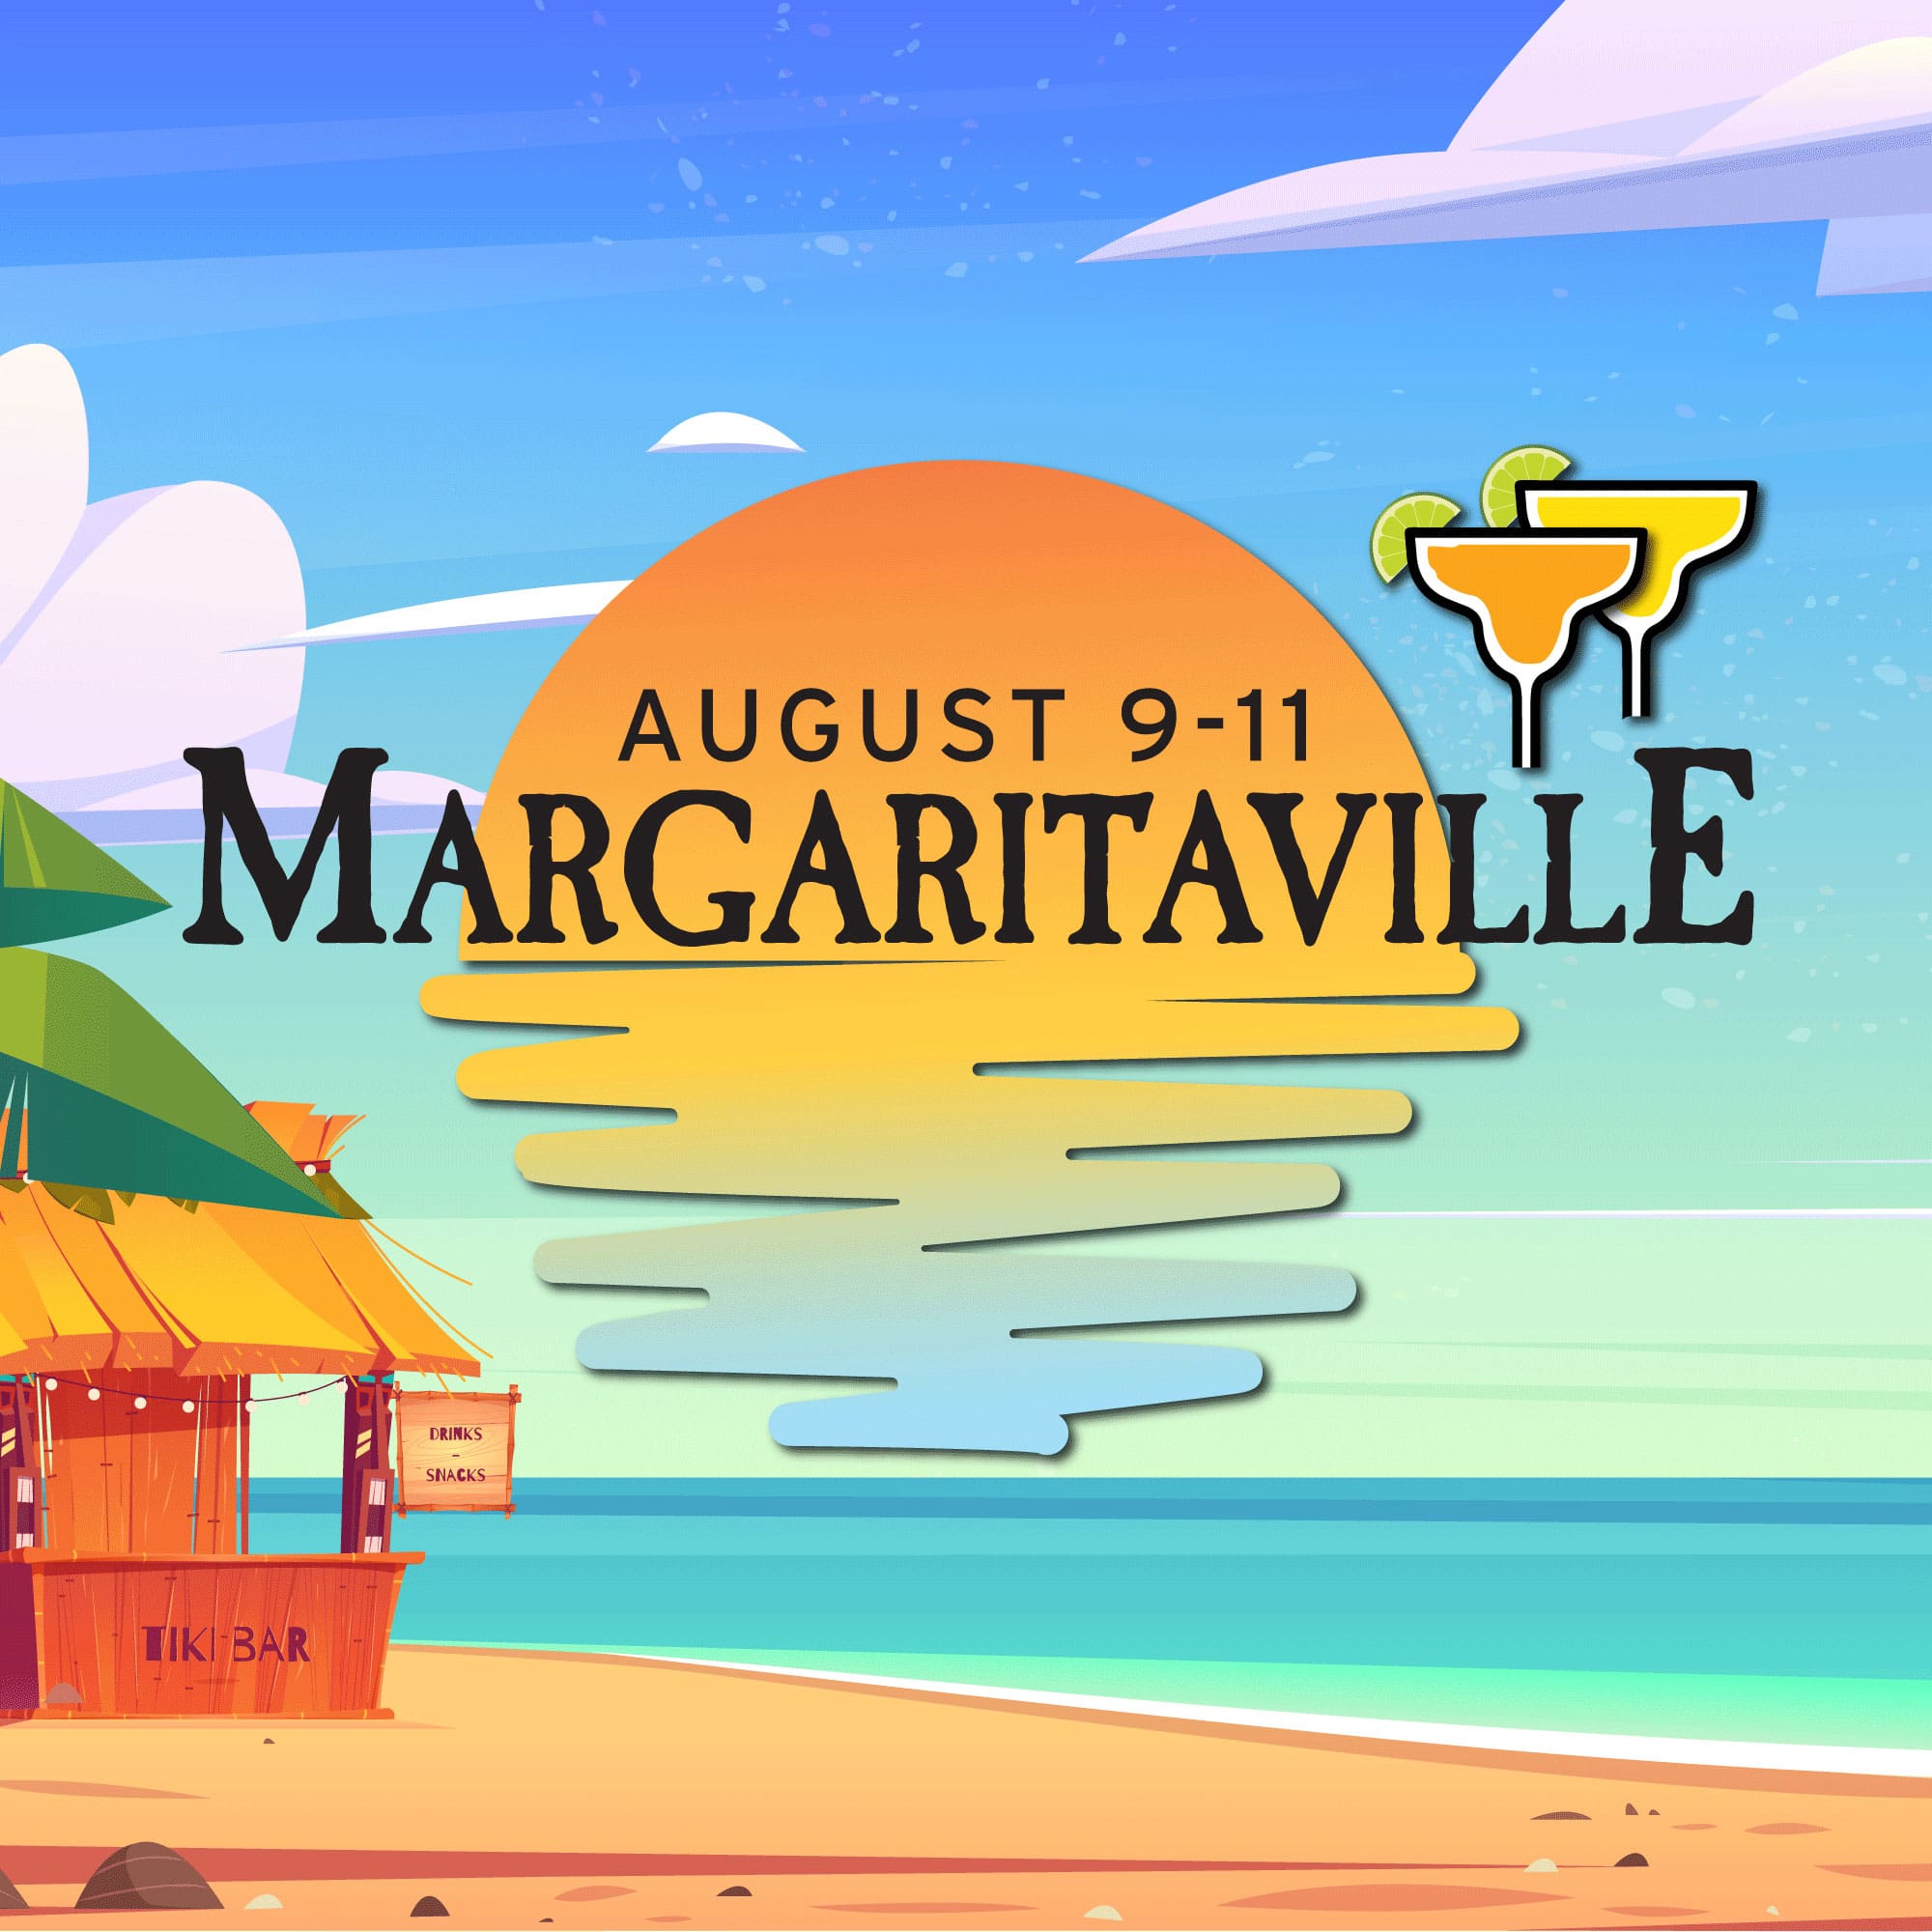 Margaritaville Weekend